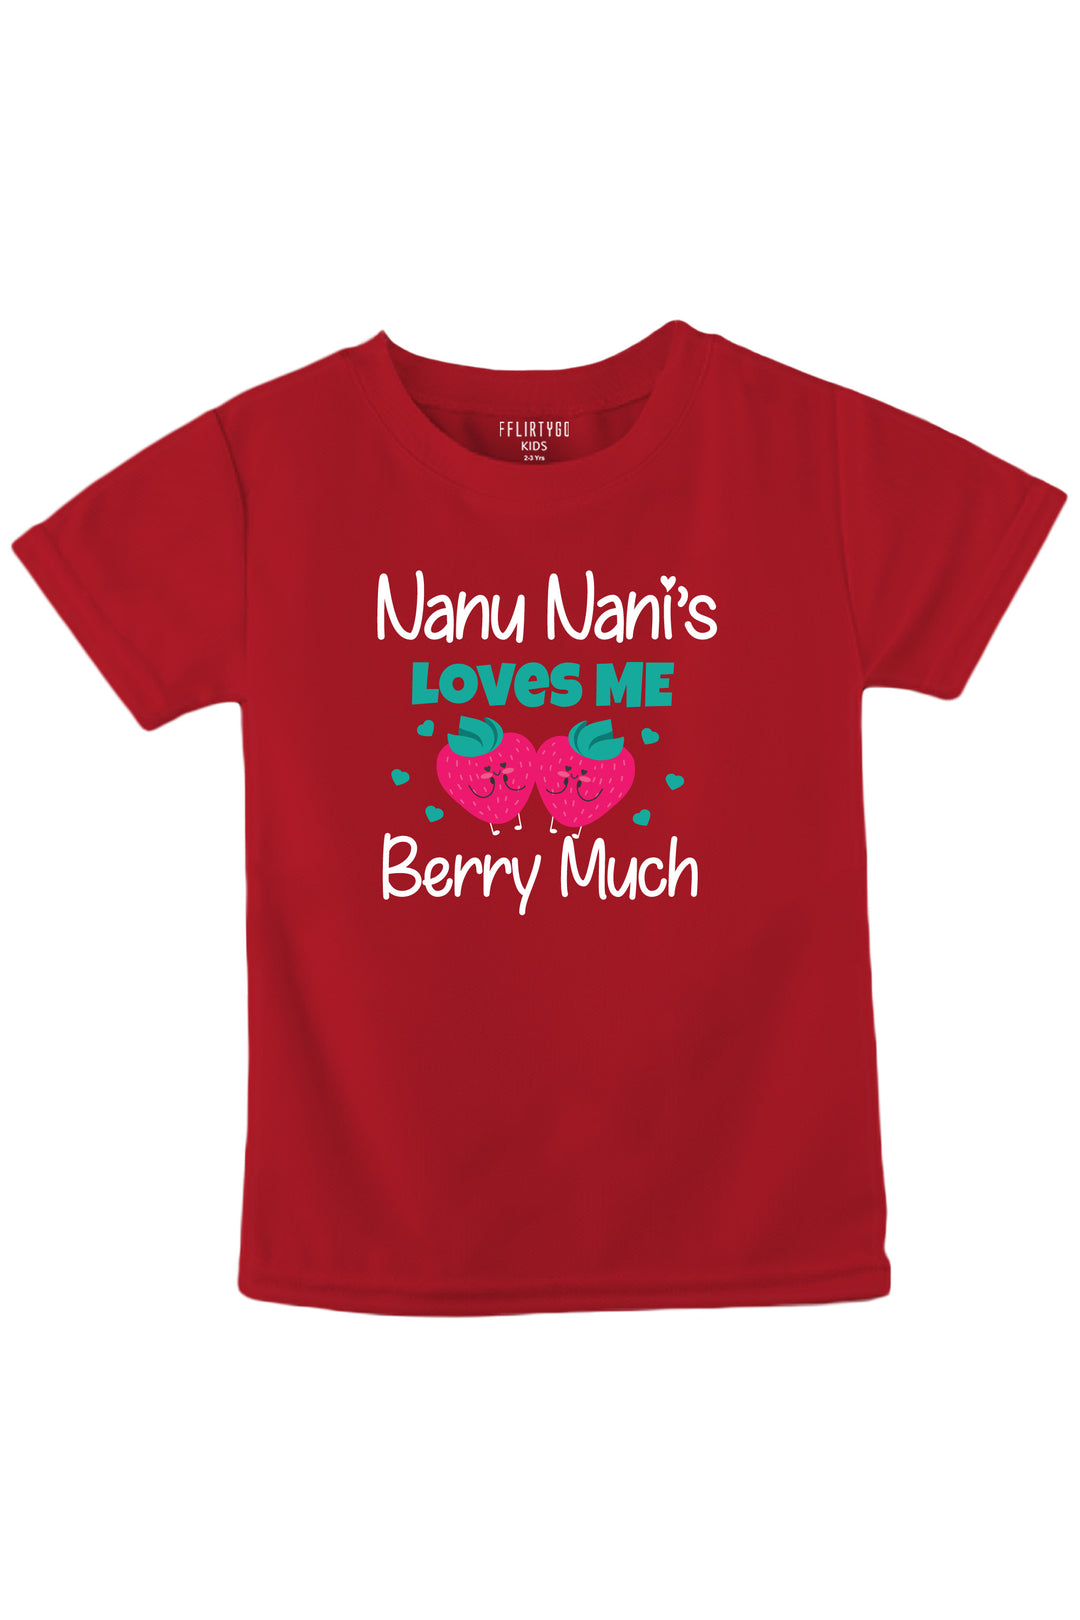 Nanu Nani Love Me Berry Much